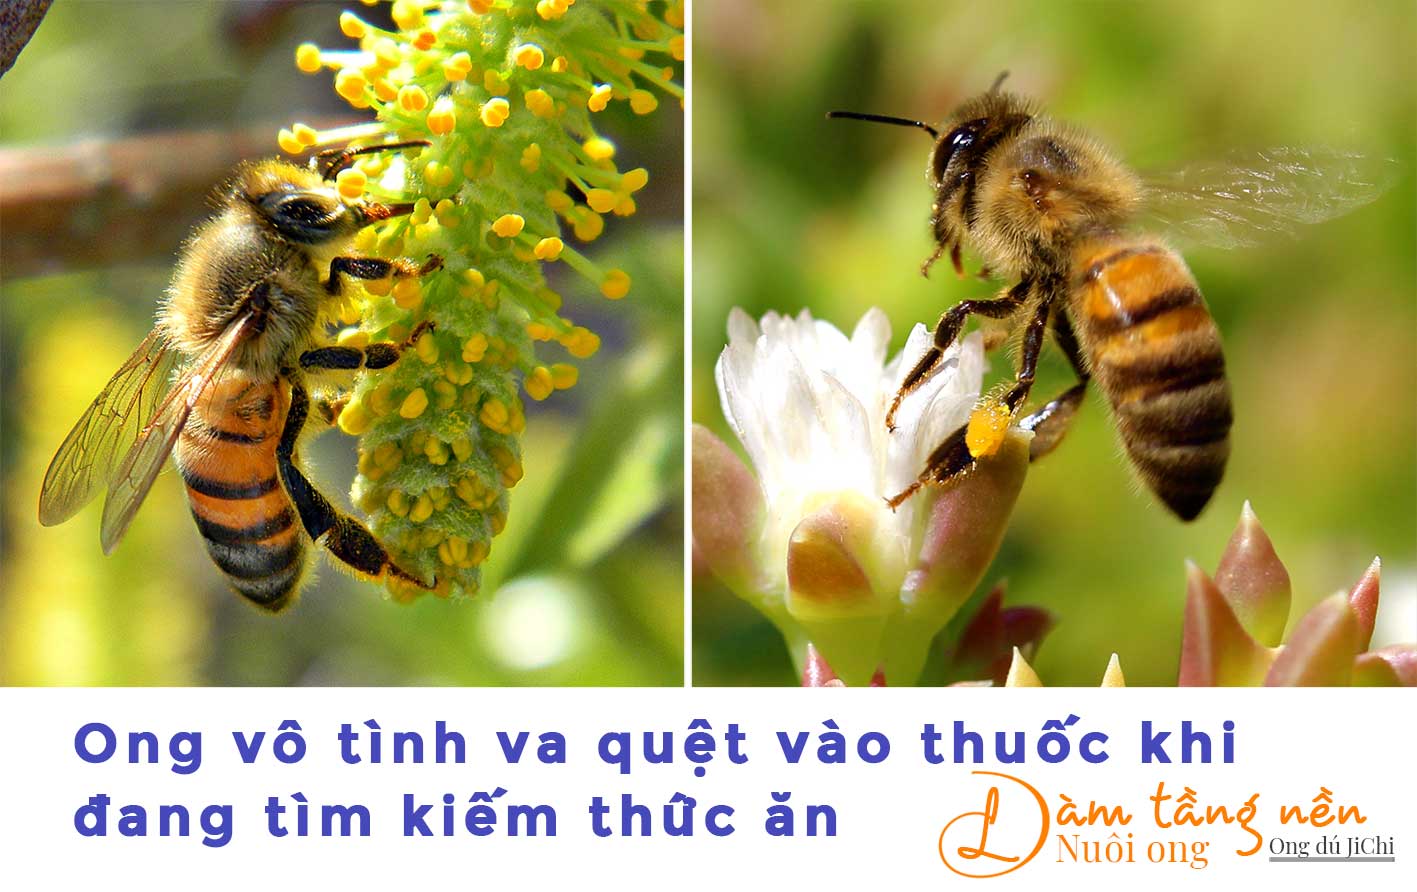 Ong mật bị dính thước sâu trong khi lấy mật trên hoa